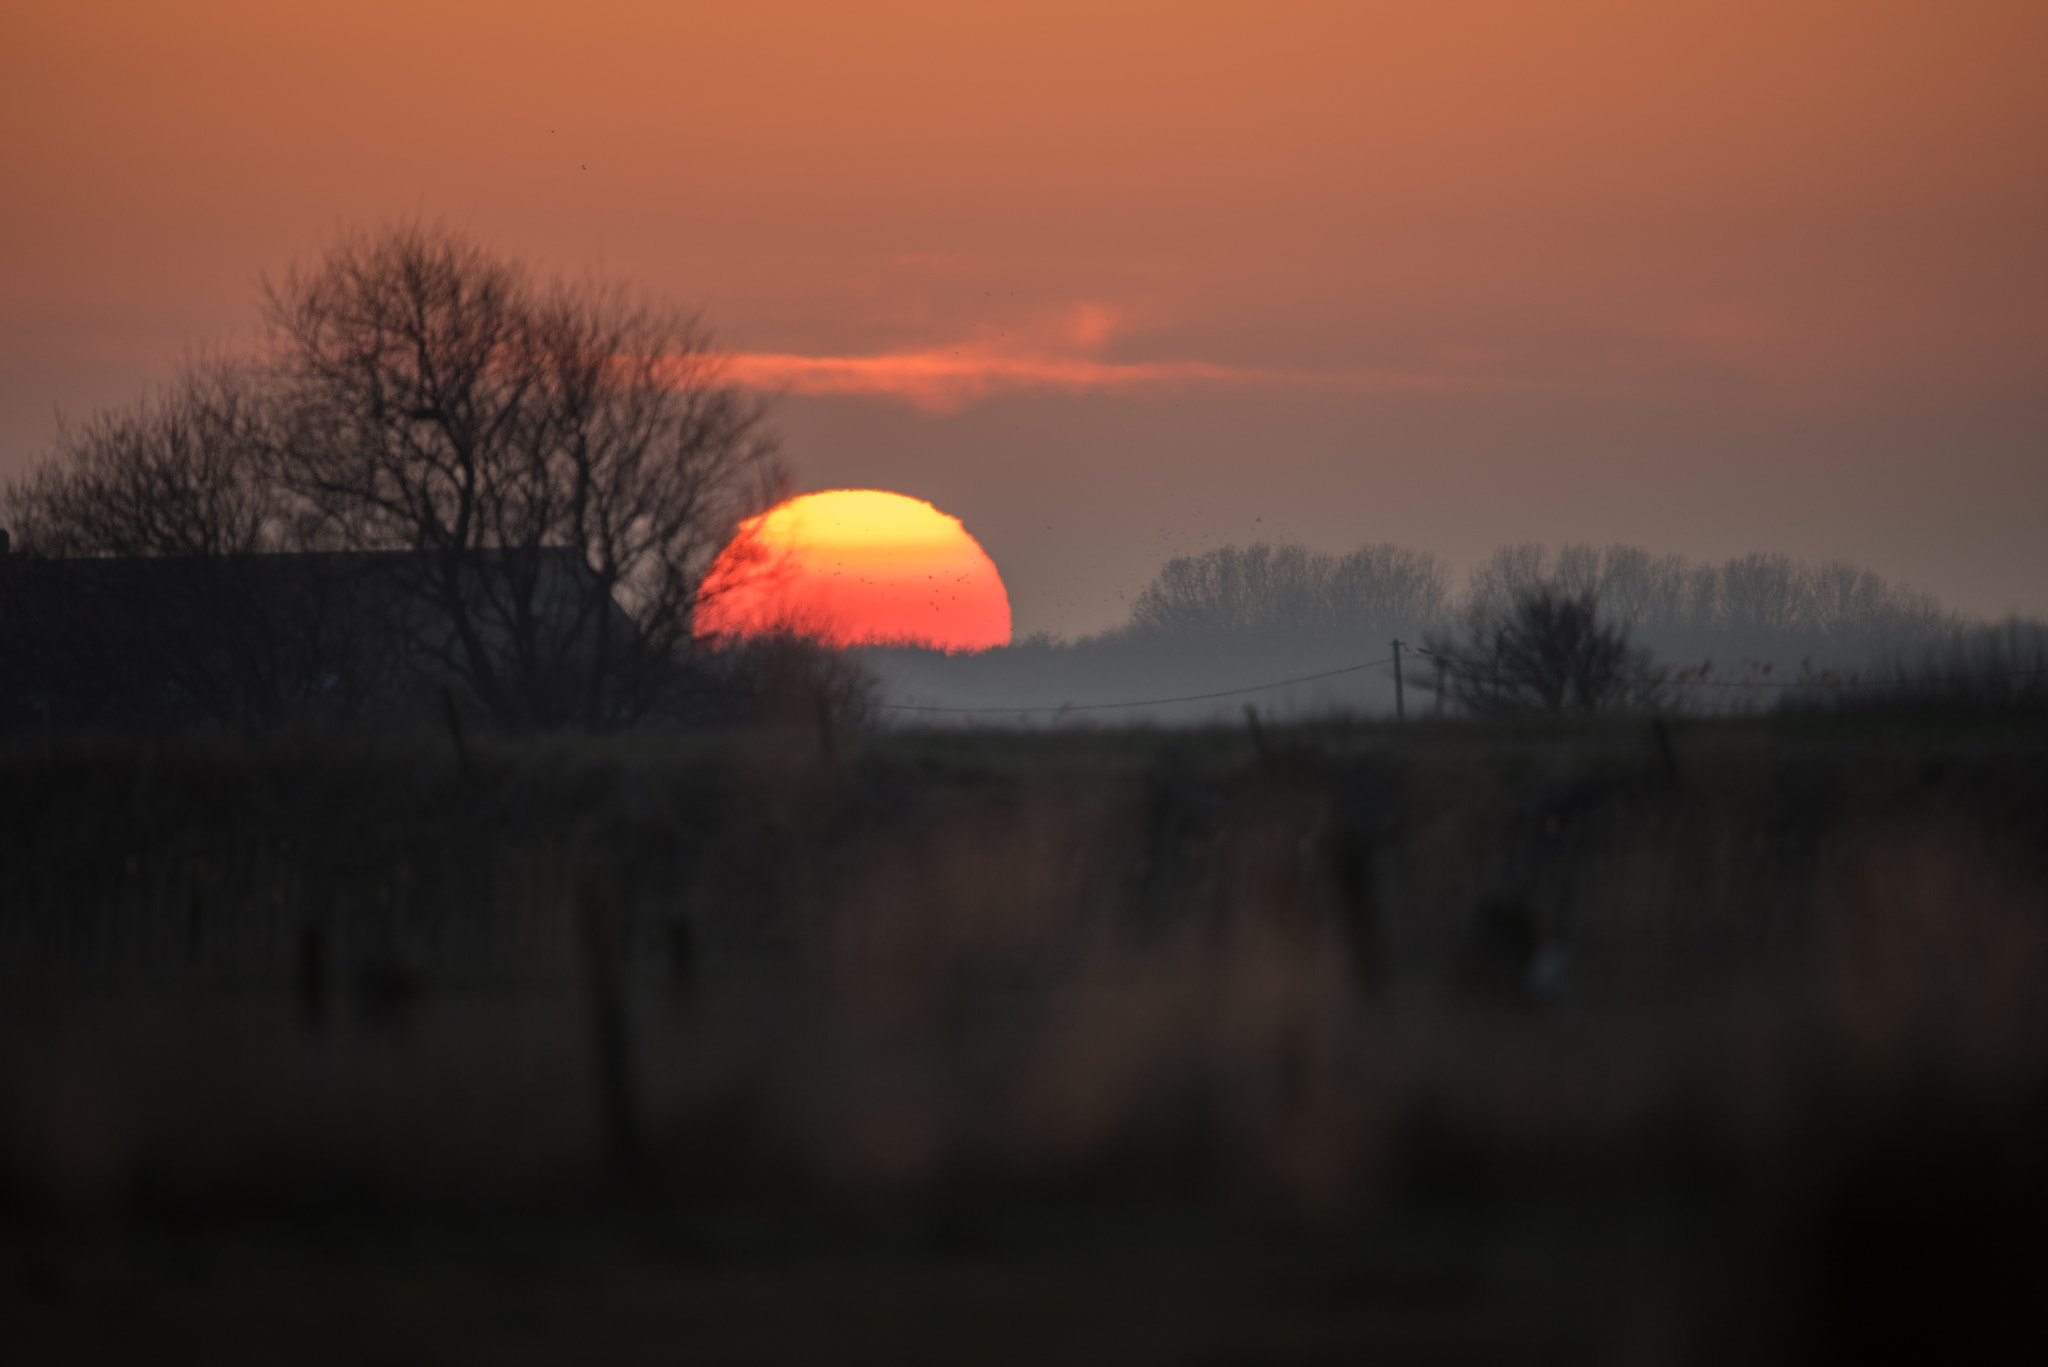 Nikon D810 sample photo. Sunset photography